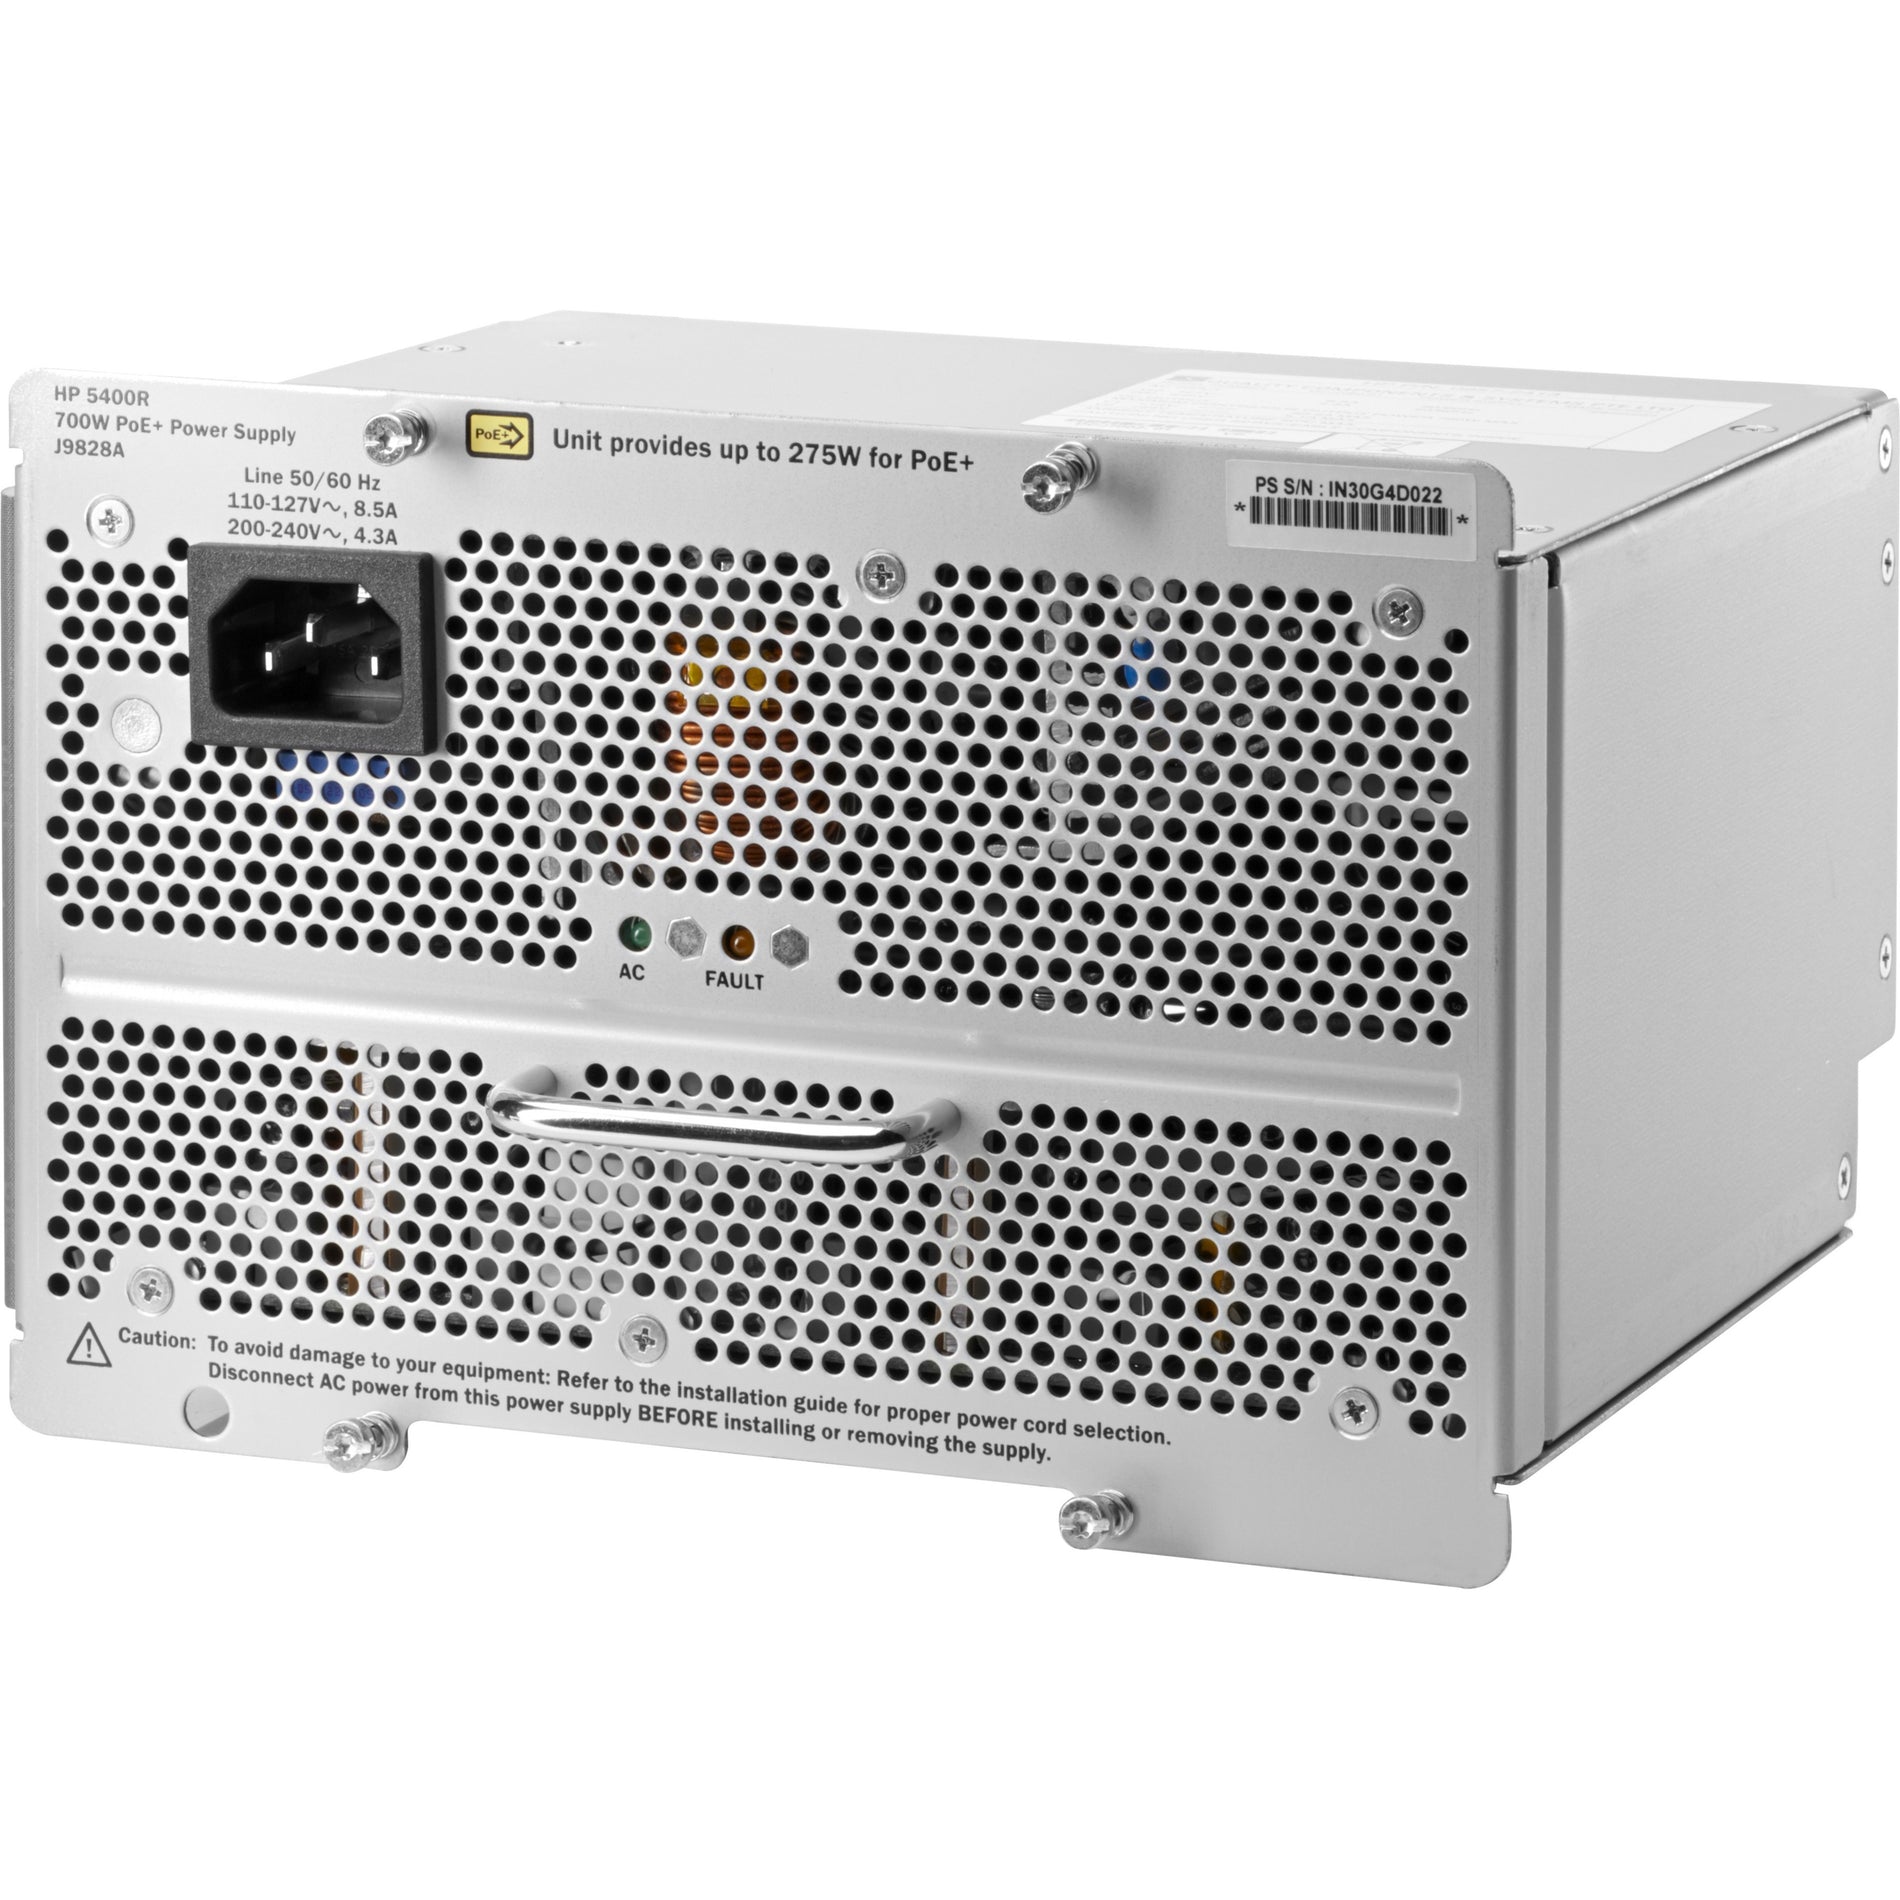 HPE 5400R 700W PoE+ zl2 Power Supply, Lifetime Warranty, 700W Output Power